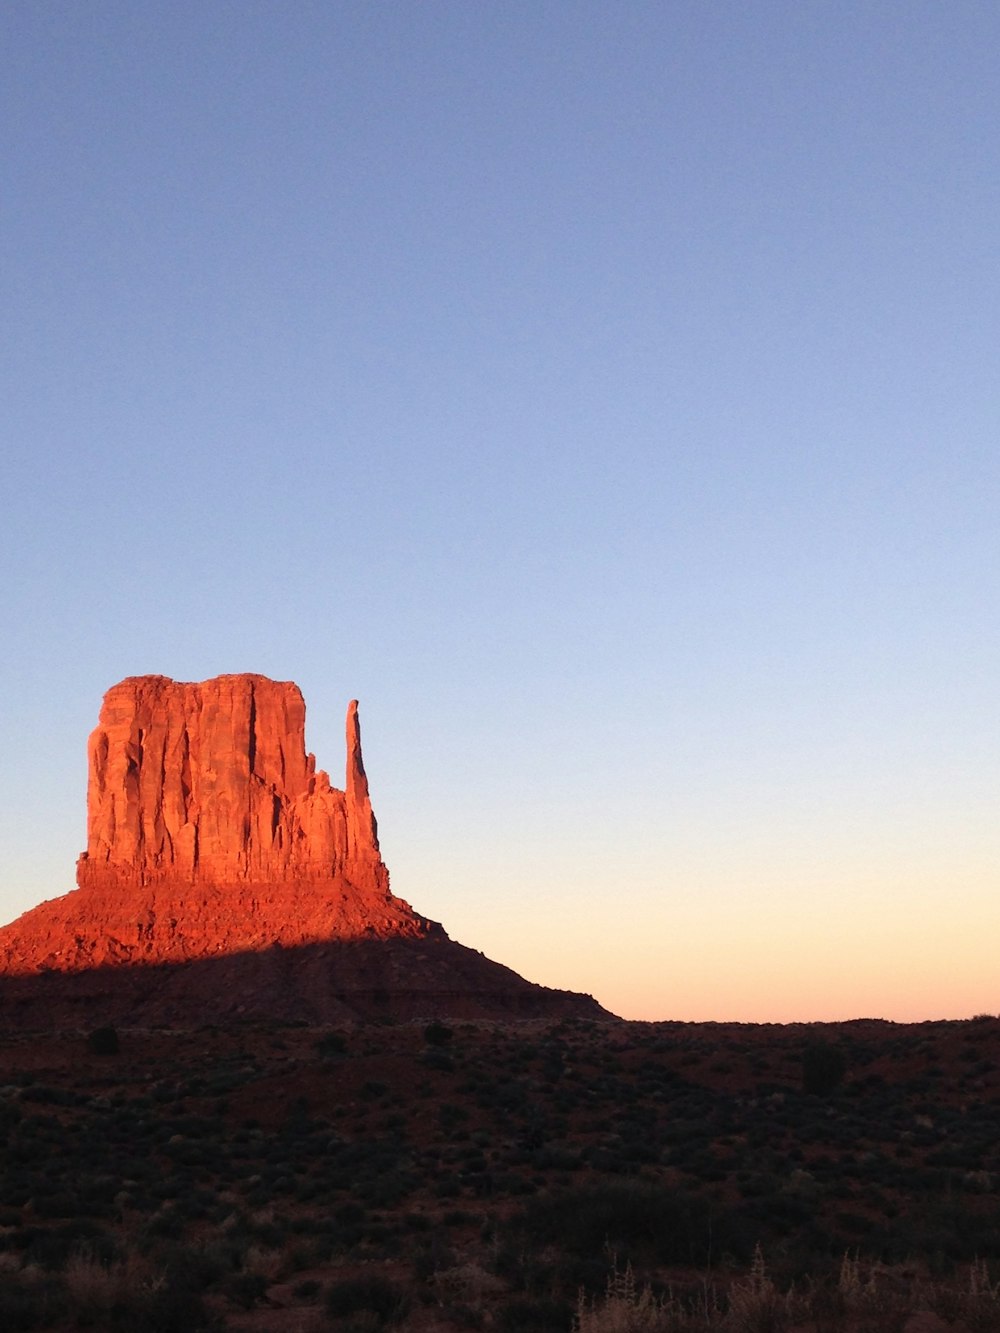 Un'alta formazione rocciosa rossa nel mezzo di un deserto